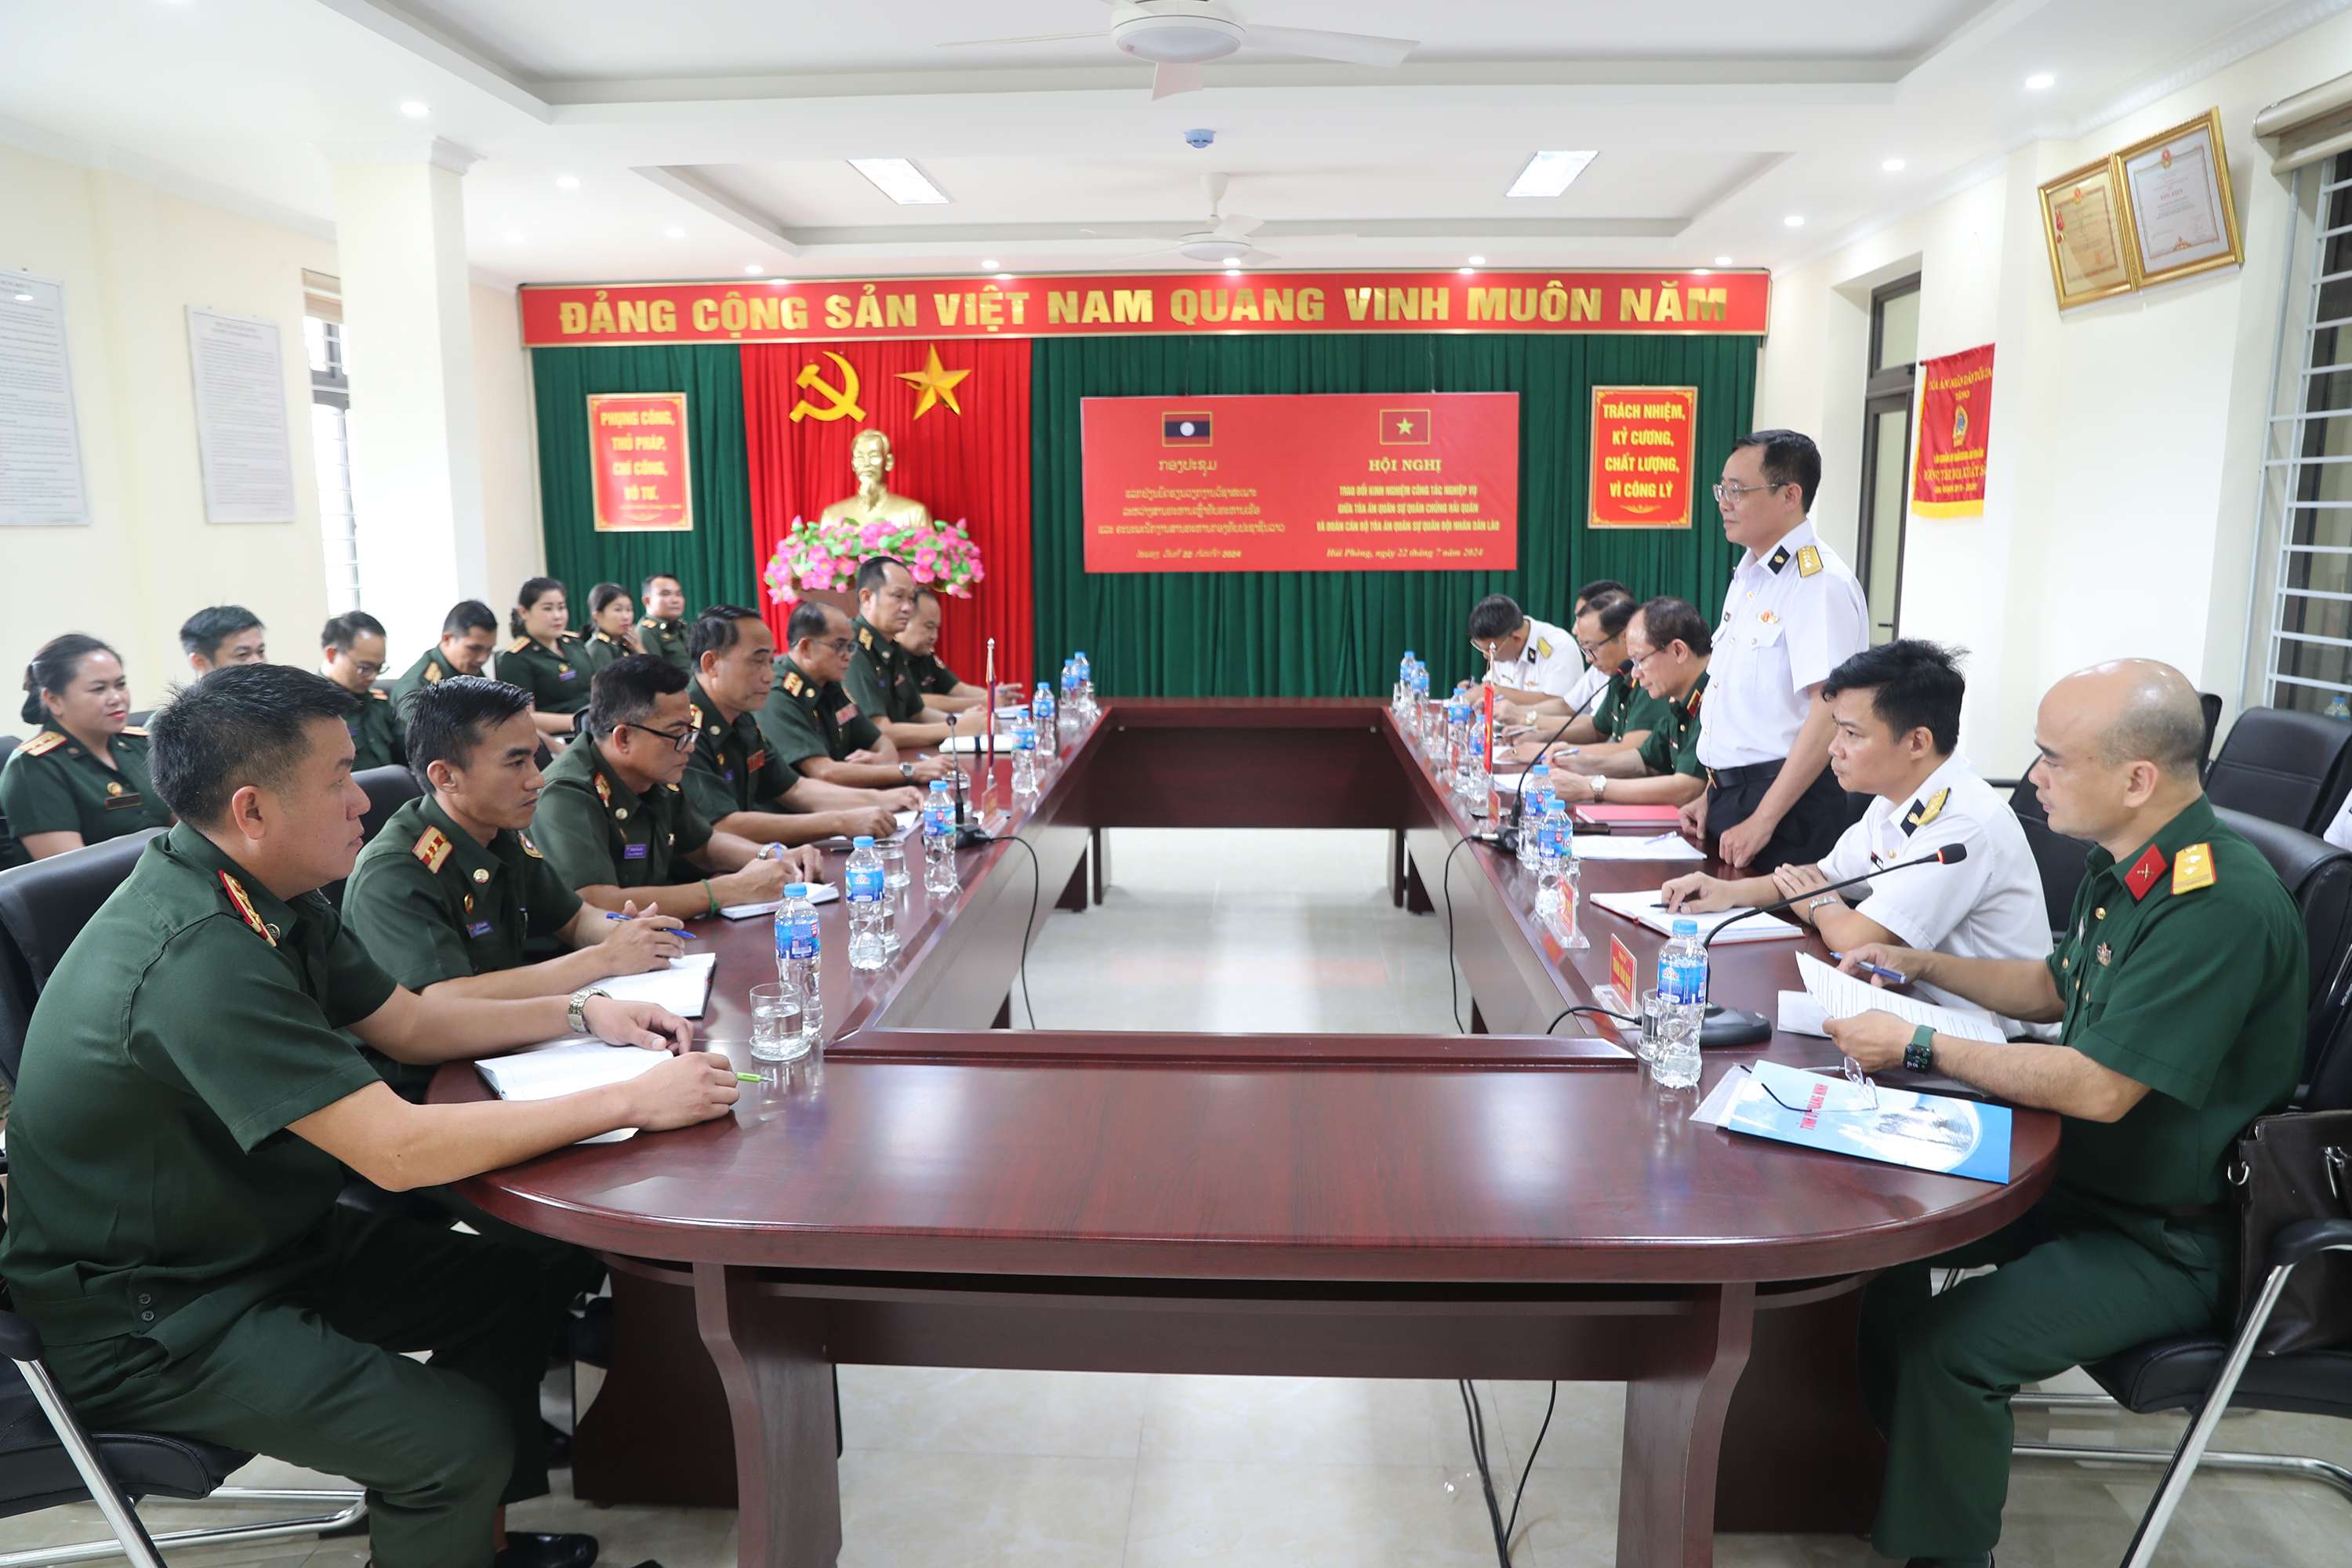 Tòa án Quân sự Quân chủng Hải quân trao đổi nghiệp vụ với Tòa án Quân sự Quân đội nhân dân Lào